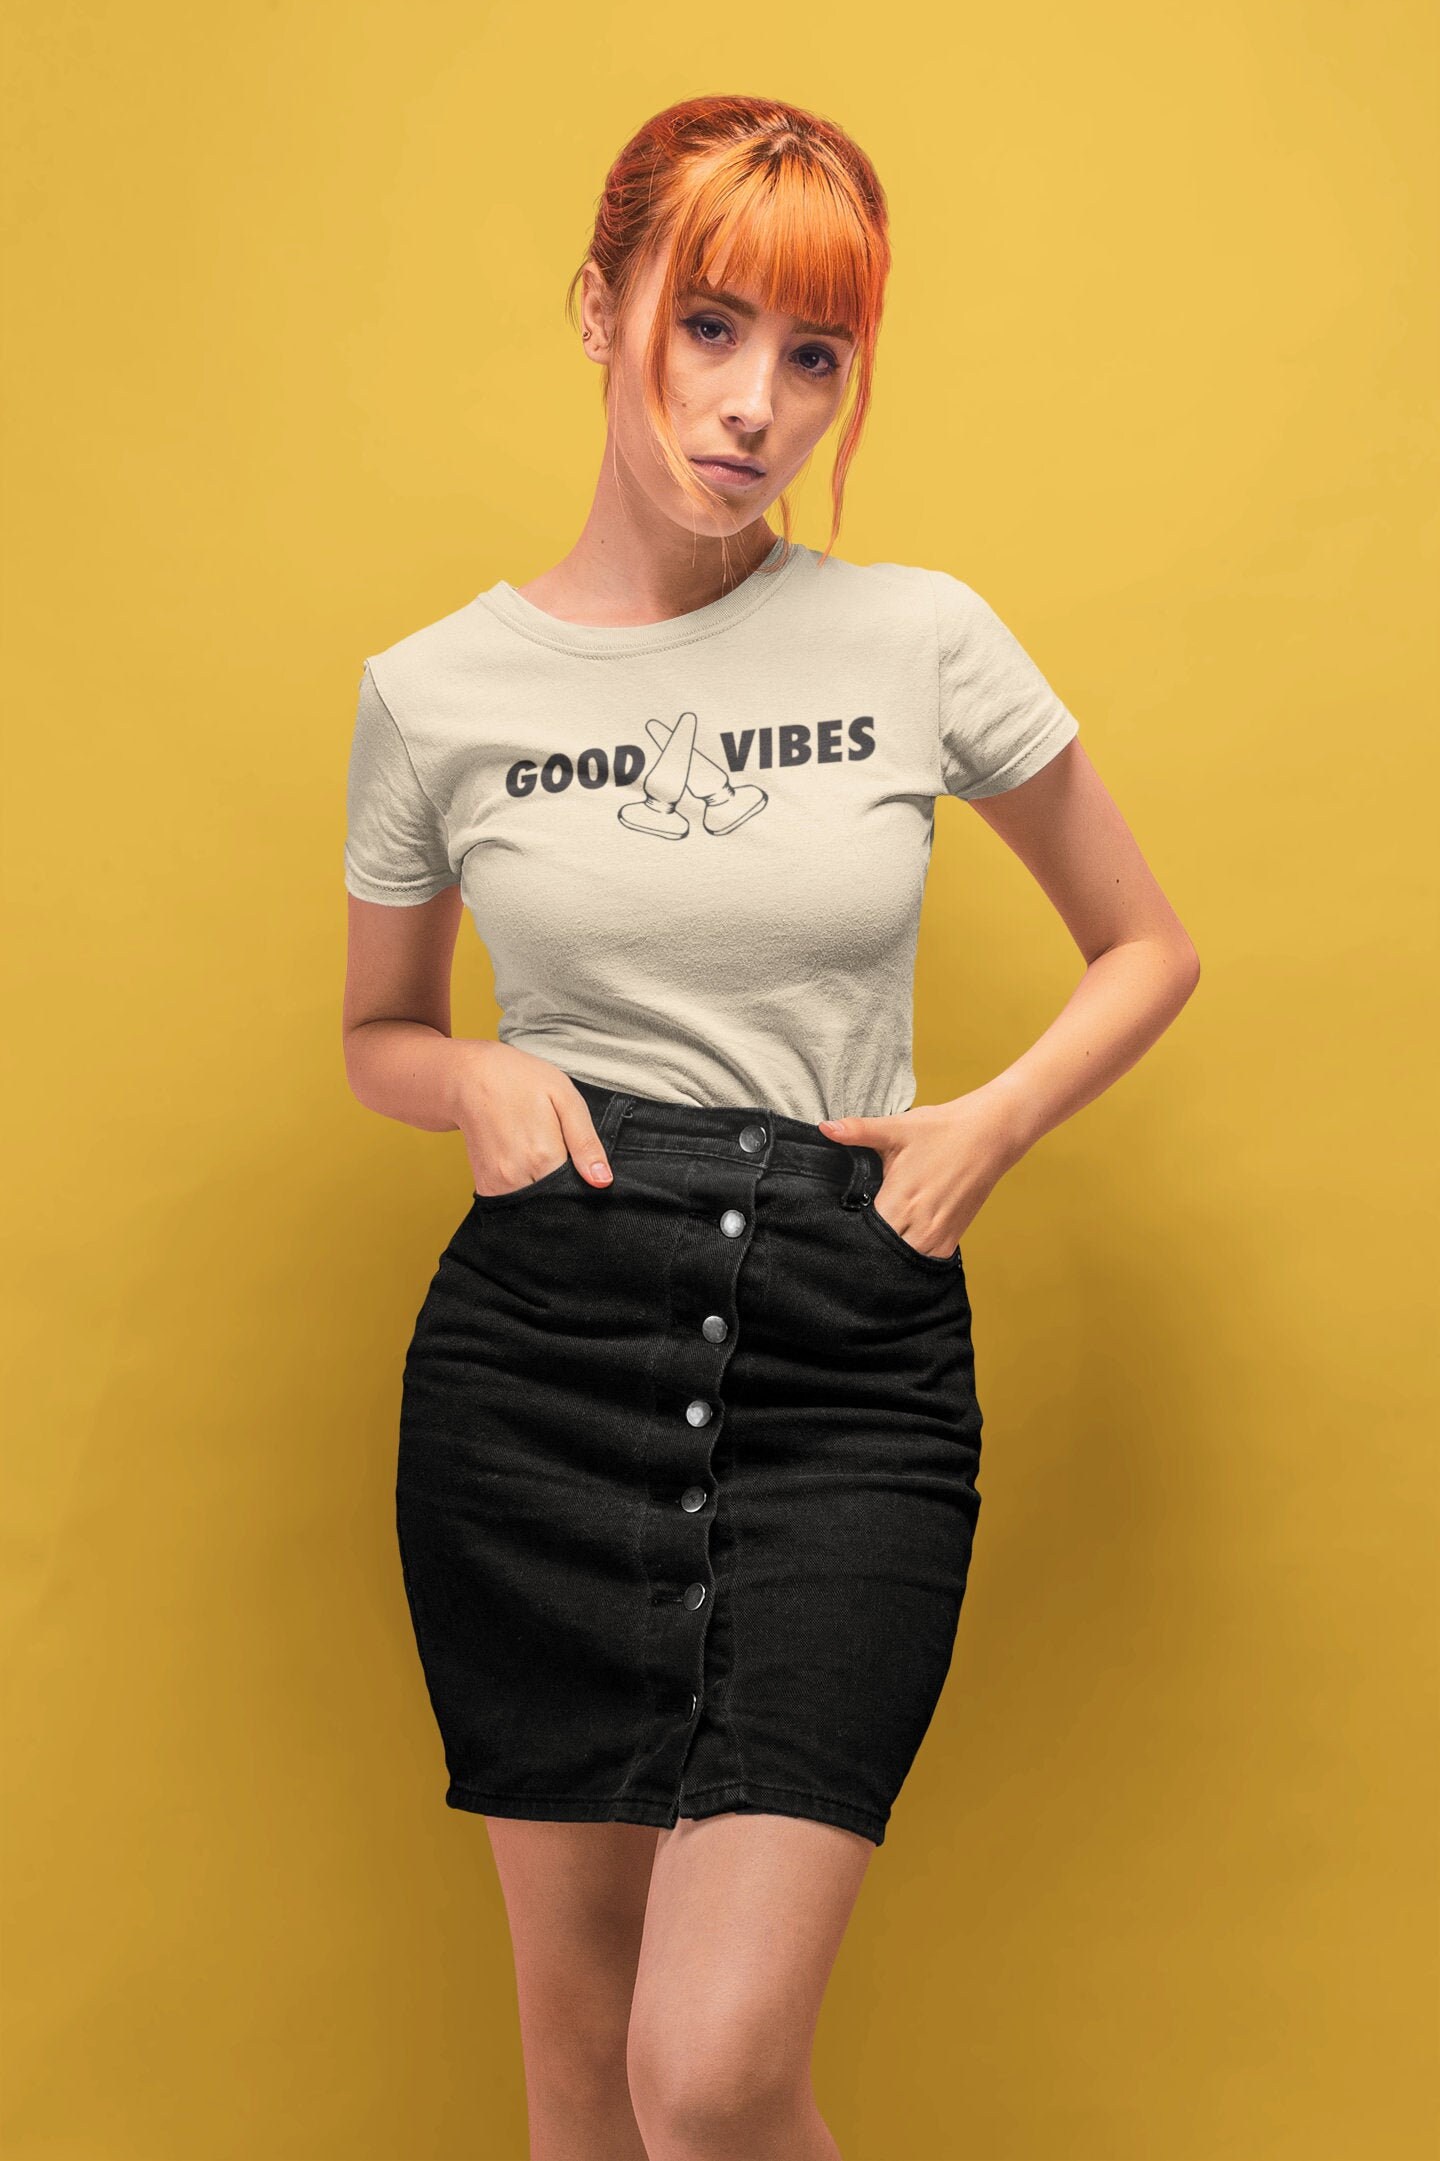 Good Vibes Tshirt Dildo Shirt 90s Shirt Lesbian Tshirt